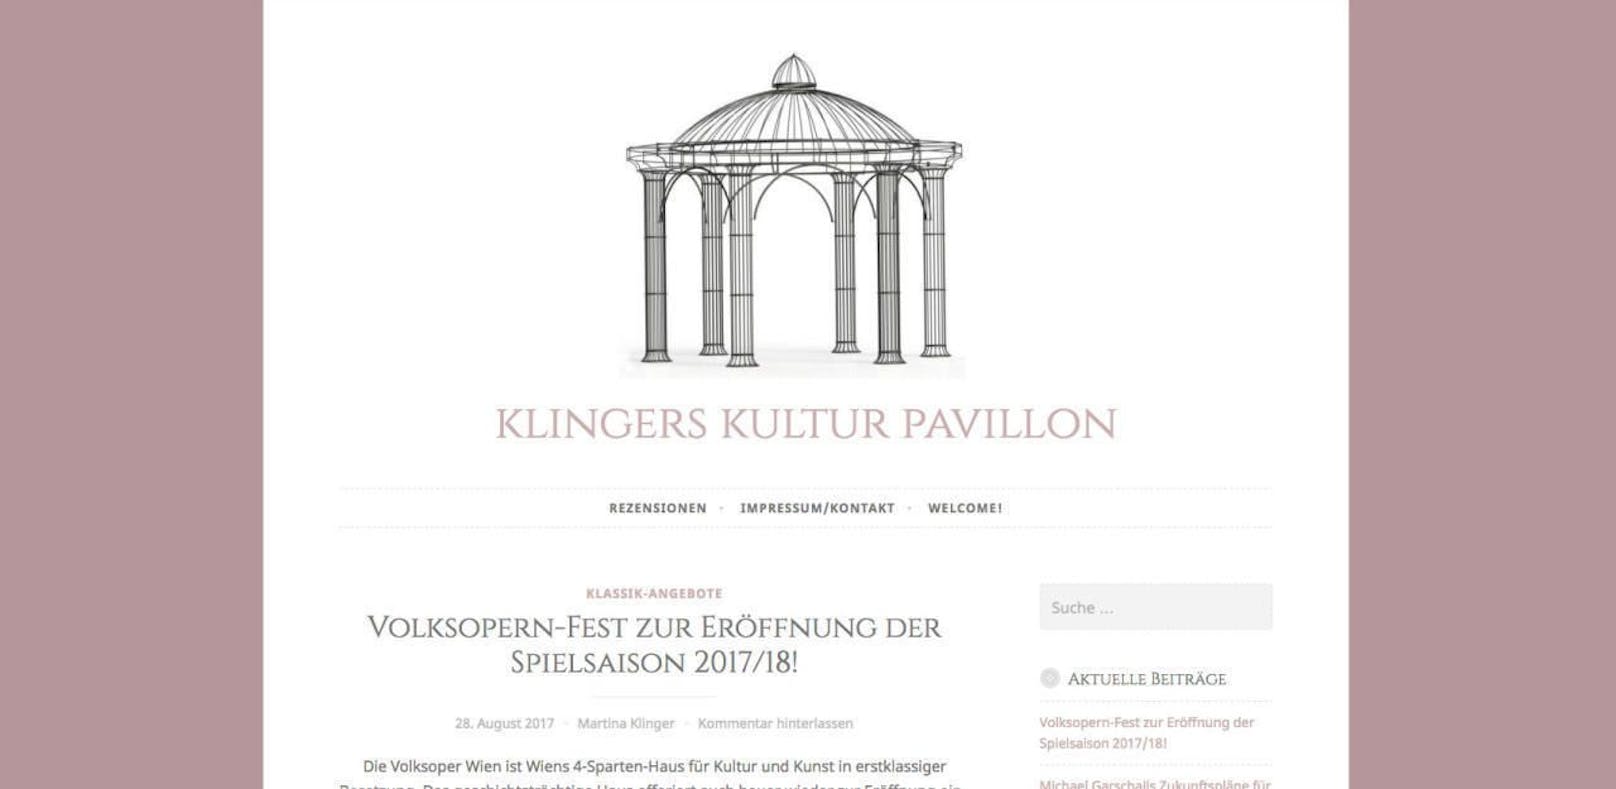 Klingers Kulturpavillon